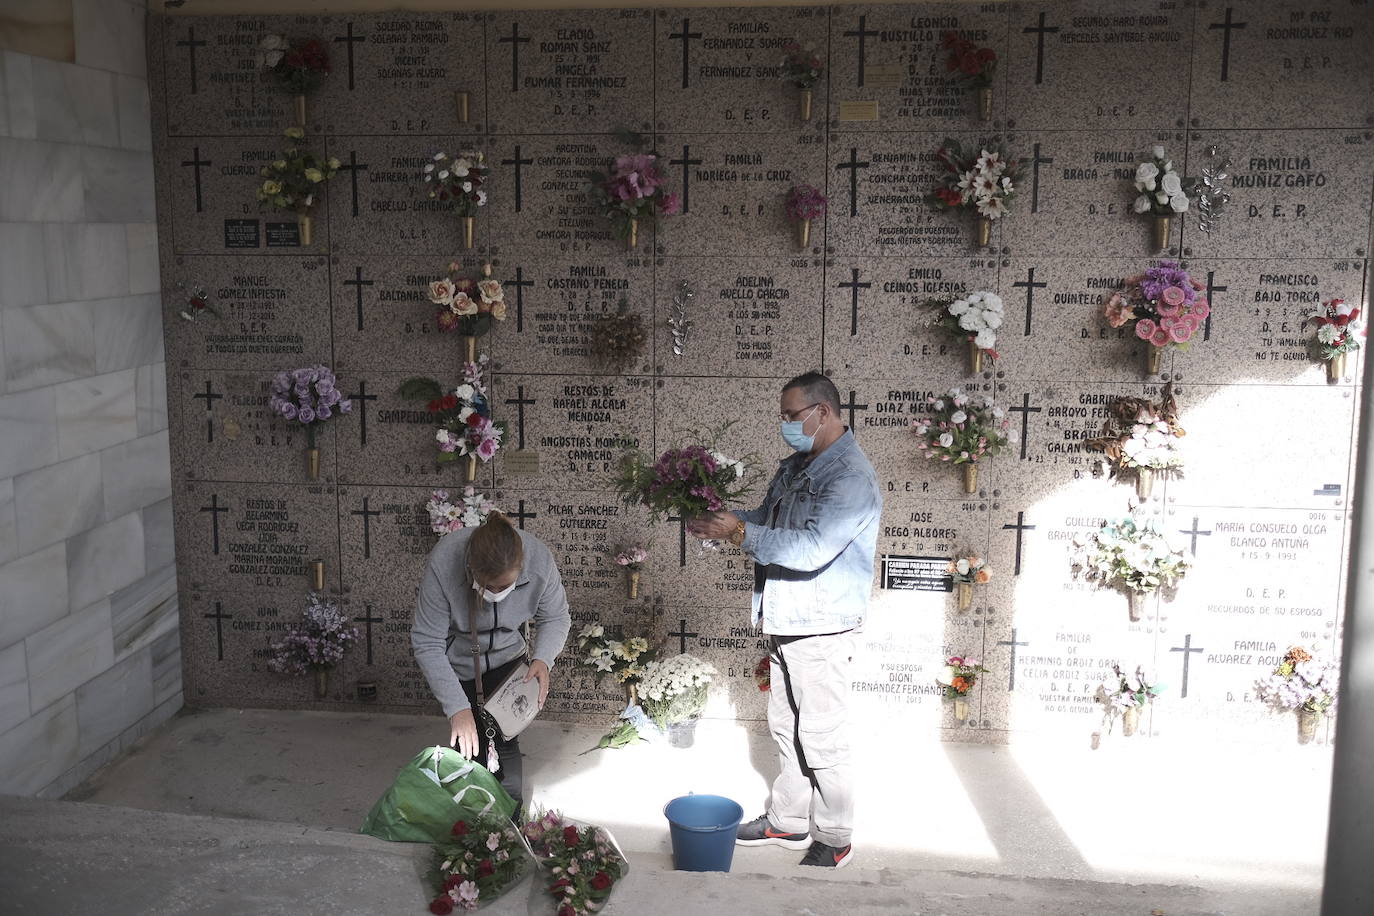 Fueron muchos los asturianos que se acercaron este sábado a los cementerios para evitar las aglomeraciones del Día de Difuntos. Tal y como recomendaron las autoridades, las visitas se están haciendo de manera escalonada.